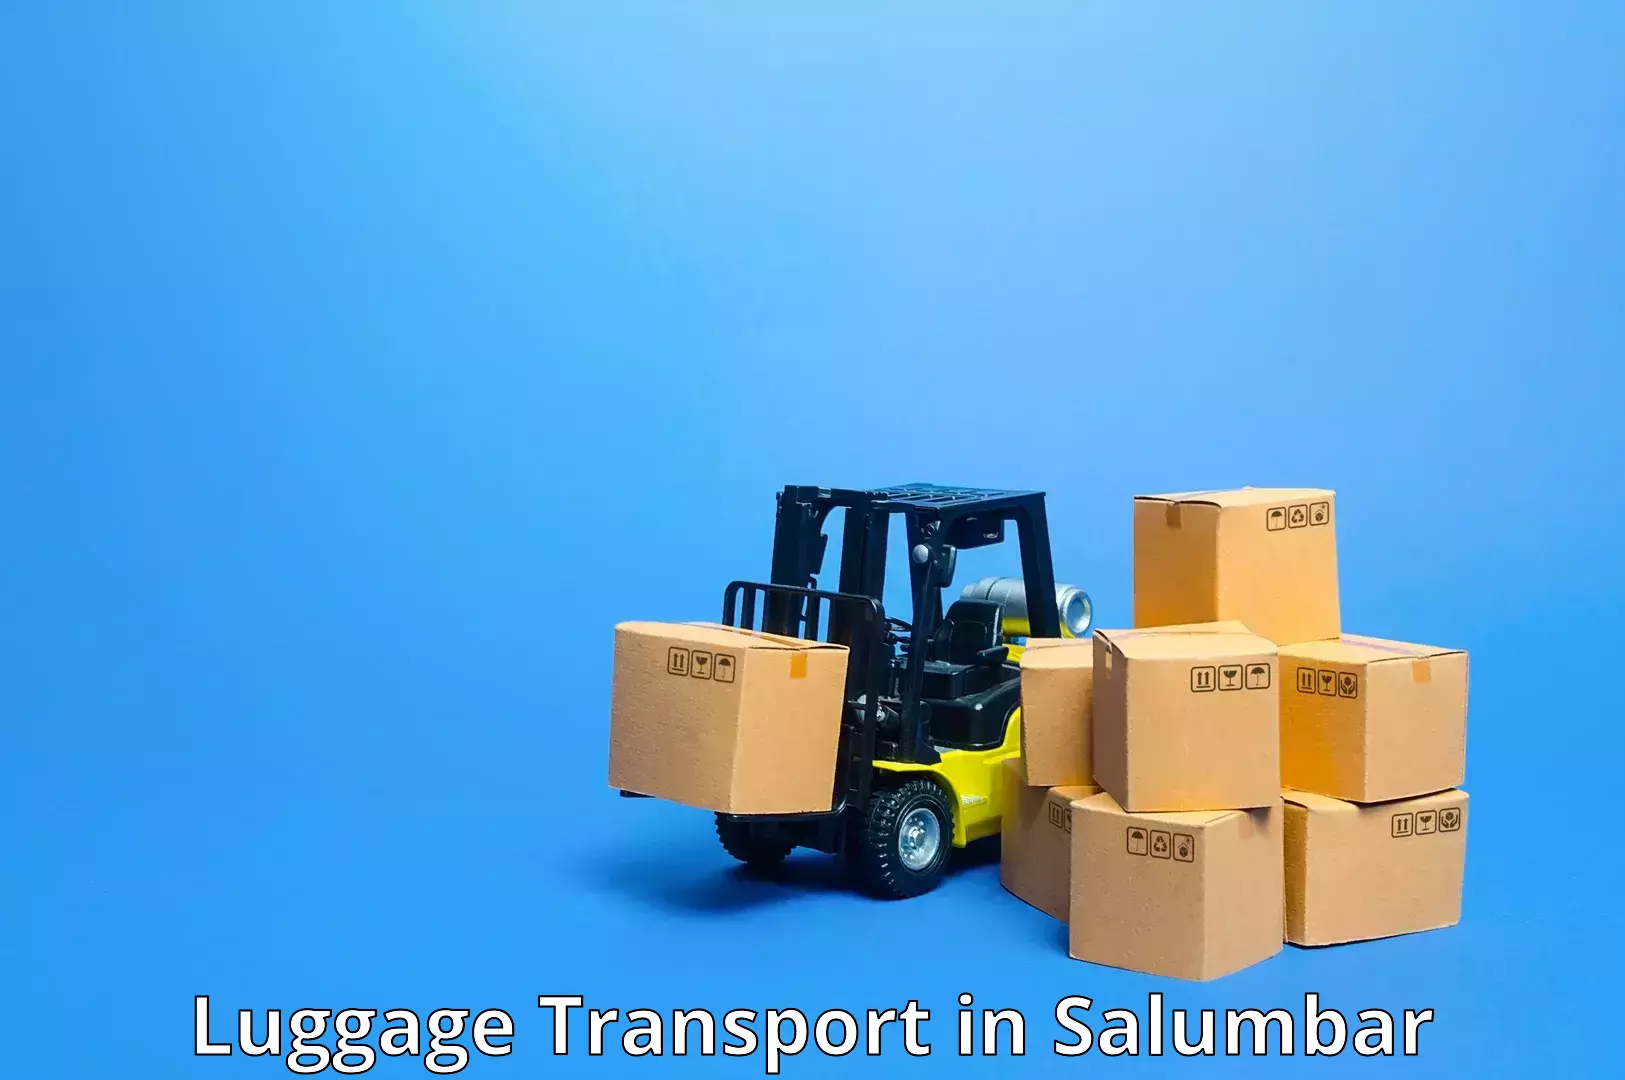 Baggage transport professionals in Salumbar